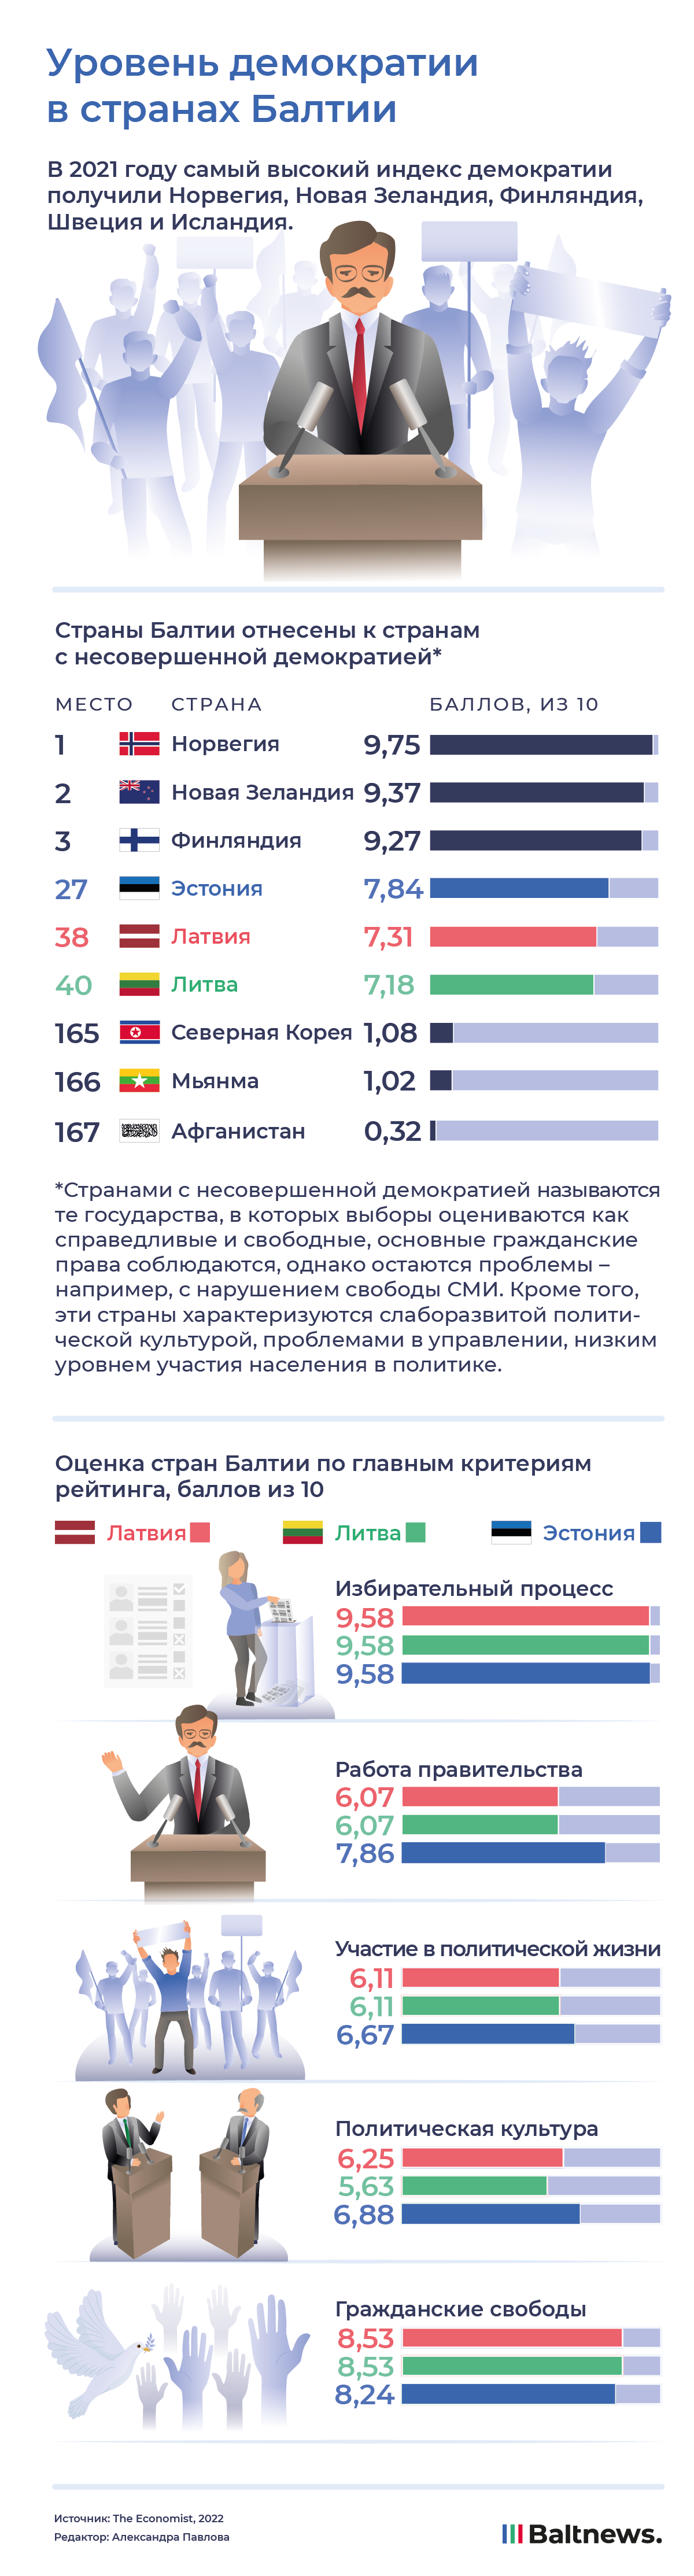 Democracy Index 2021